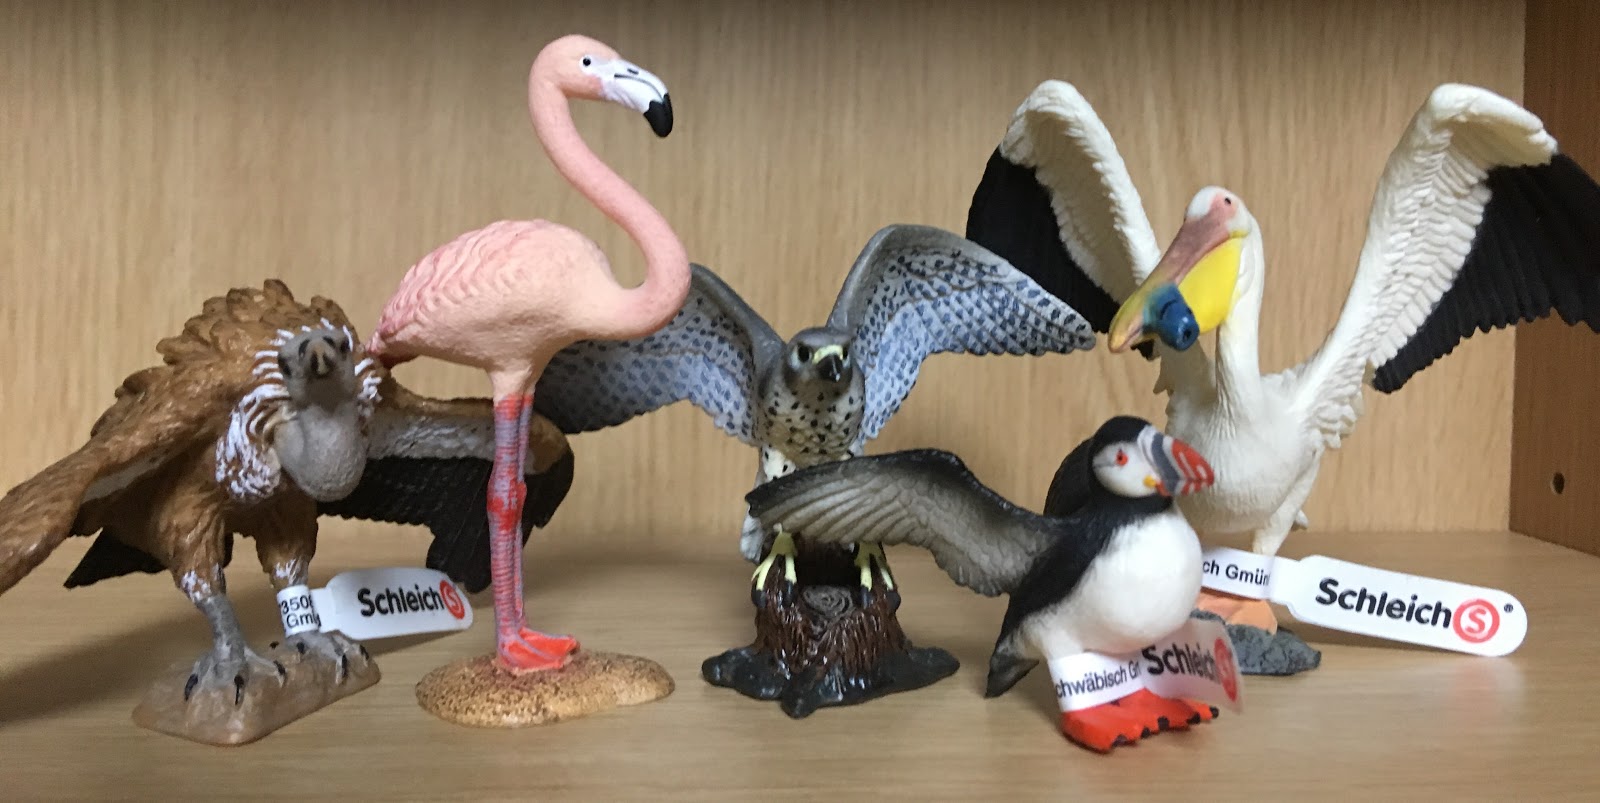 HappyDay: Schleichの鳥のフィギュアたち